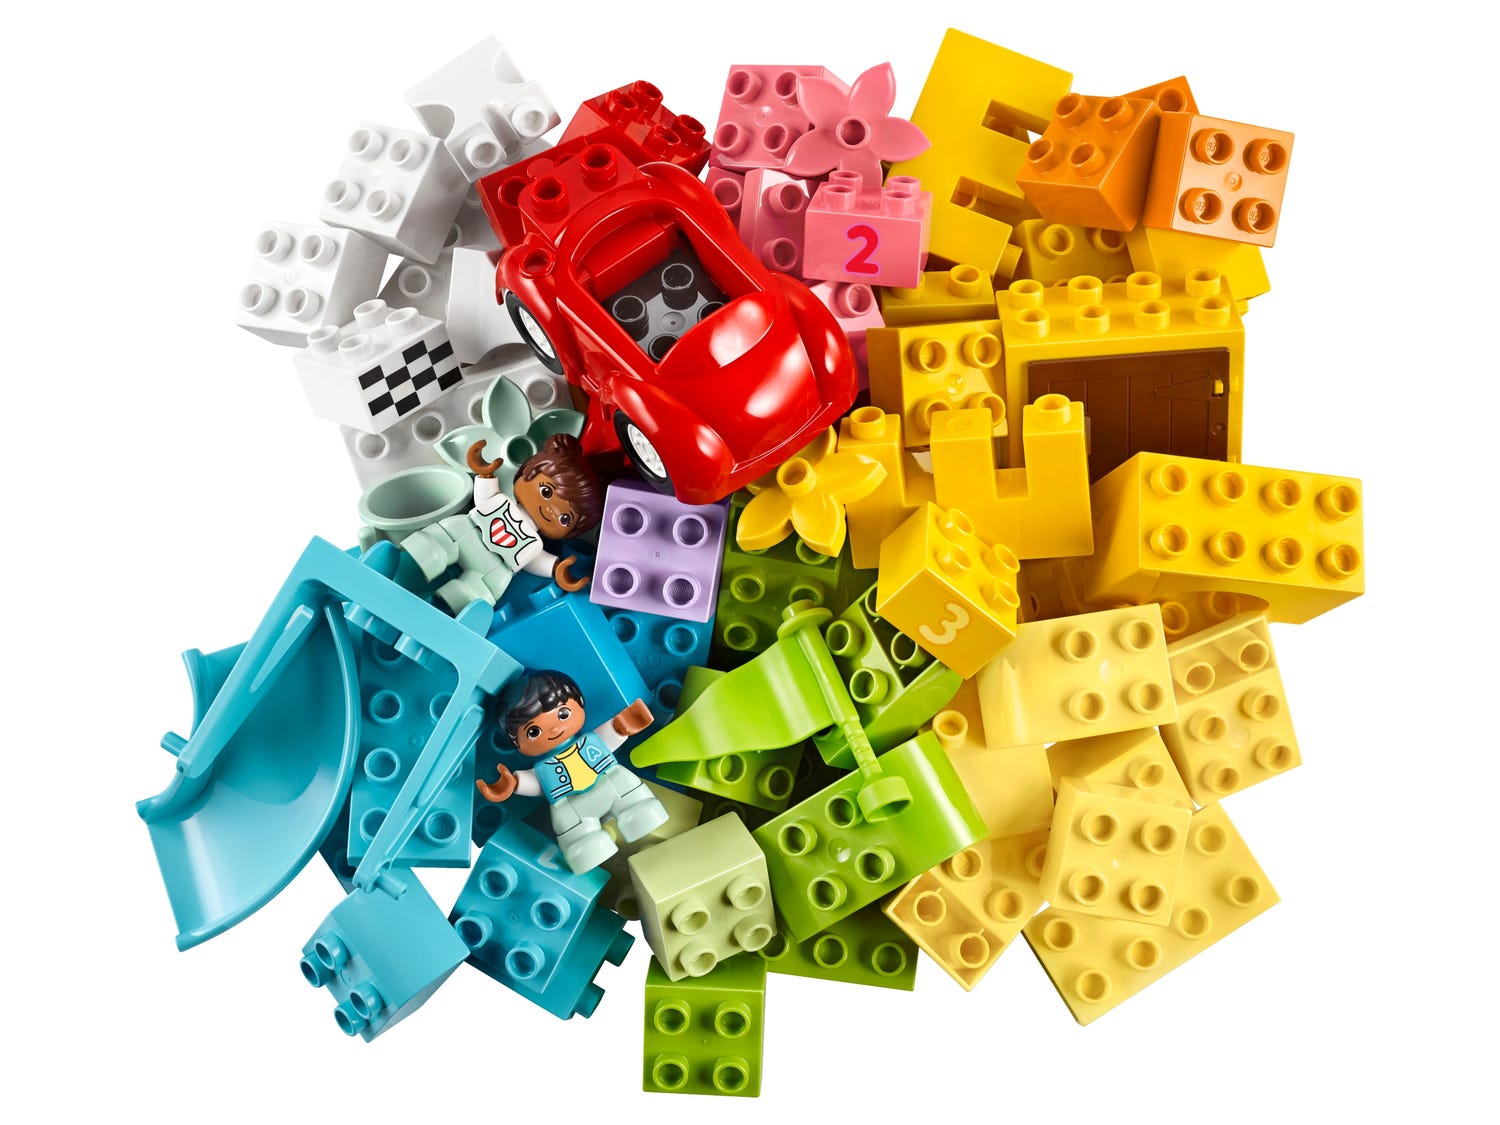 LEGO DUPLO 10914 Nagy doboz kockákkal